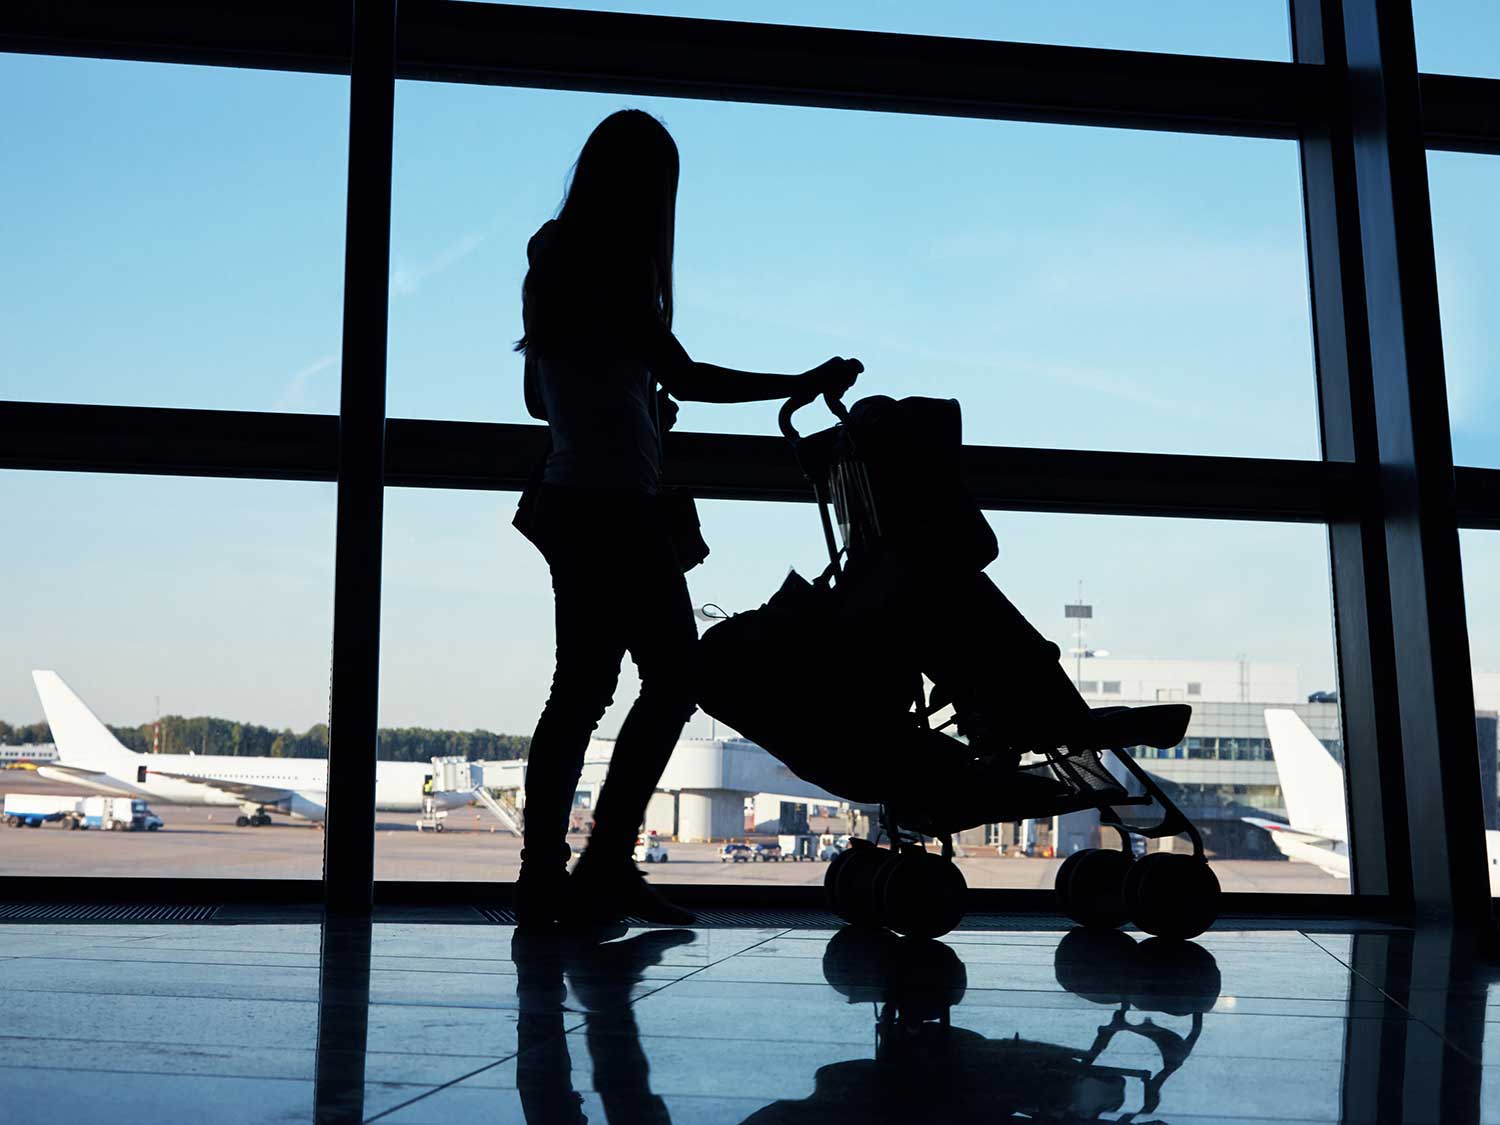 Woman pushing stroller through airport